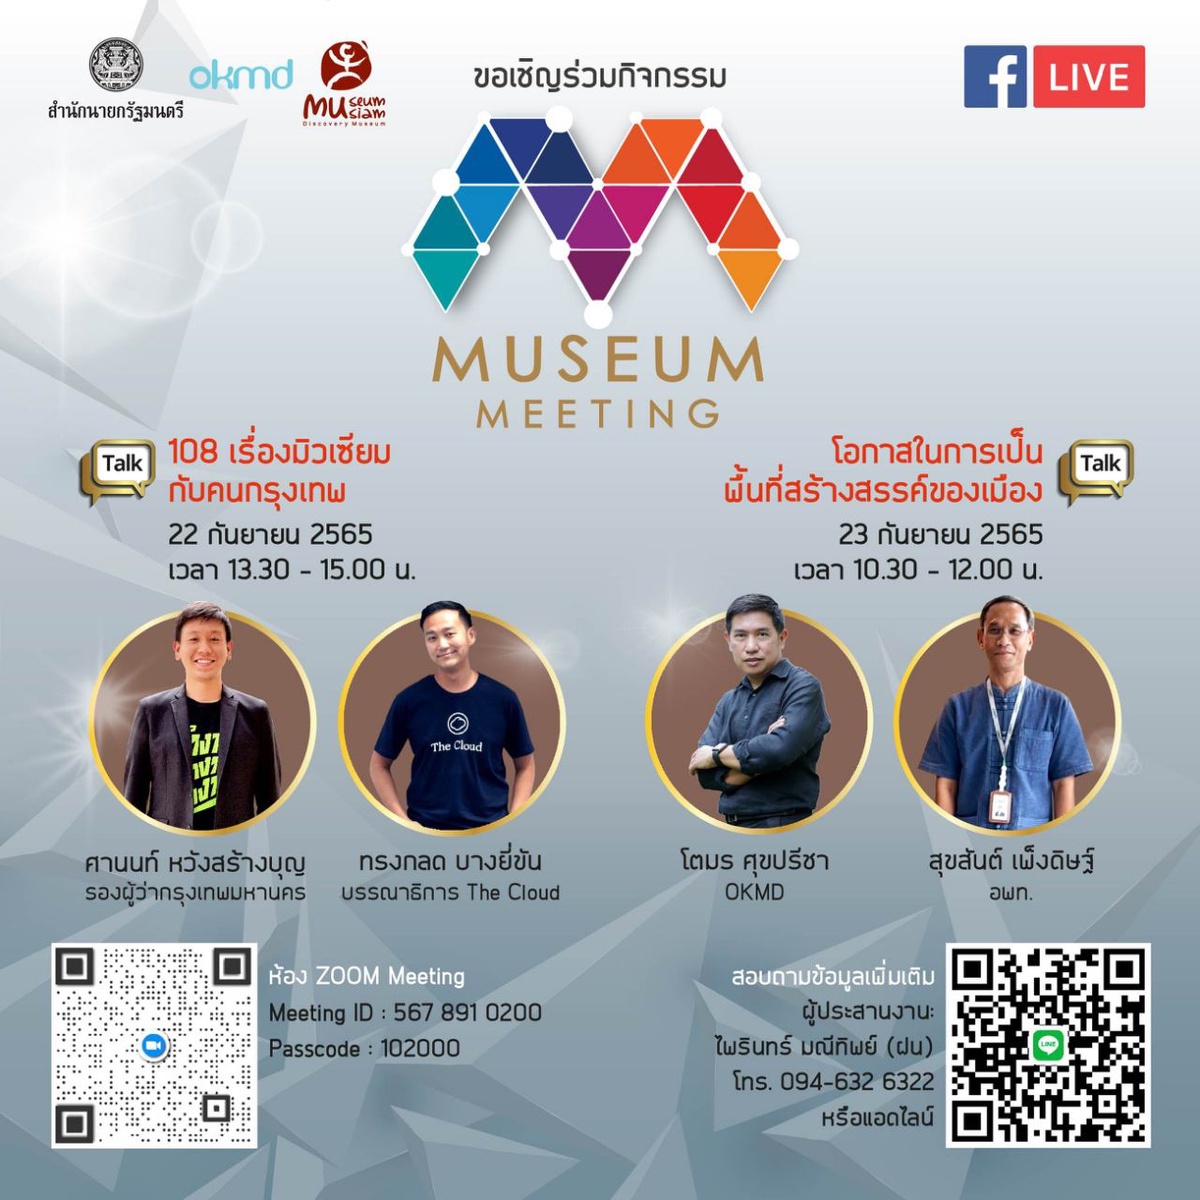 มิวเซียมสยาม ชวนเปิดมุมมองในงานเสวนาออนไลน์ Museum Meeting 2022 ร่วมสร้างสรรค์ให้พิพิธภัณฑ์สนุกกว่าที่คิด ผ่าน Museum Thailand Platform